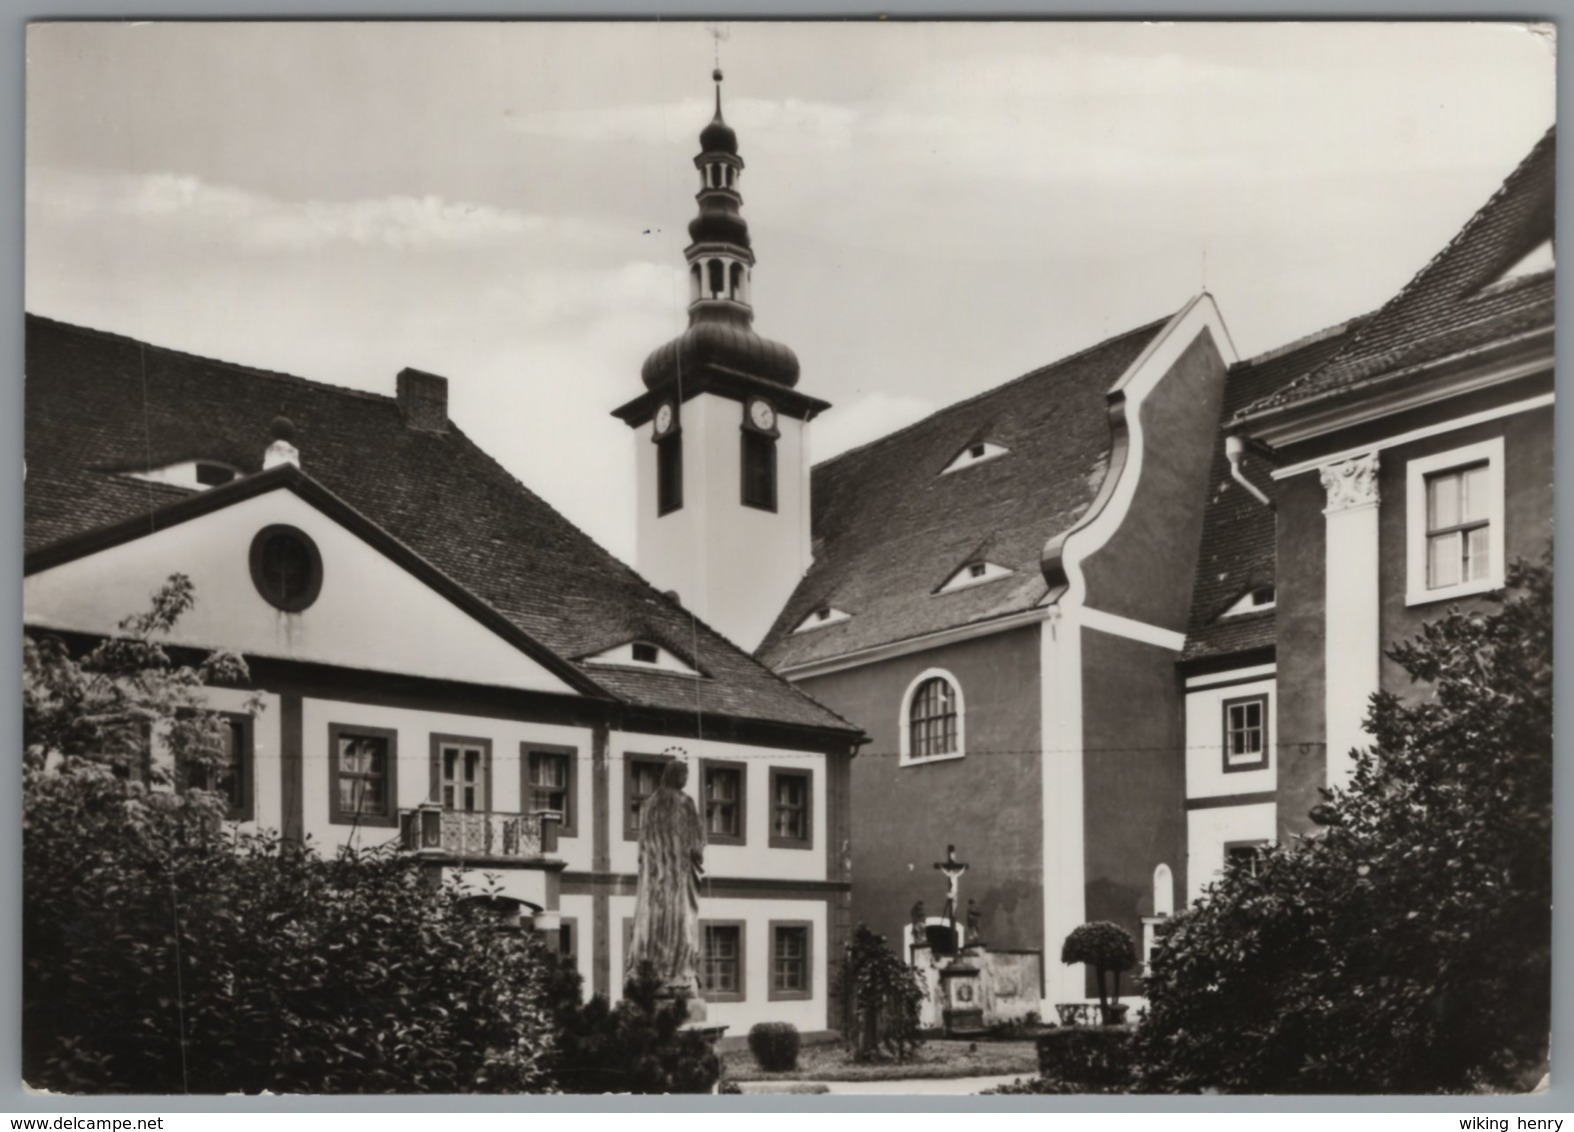 Ostritz - S/w Zisterzienserinnenabtei Sankt Marienthal Klosterkirche Abtei Und Propstei - Ostritz (Oberlausitz)